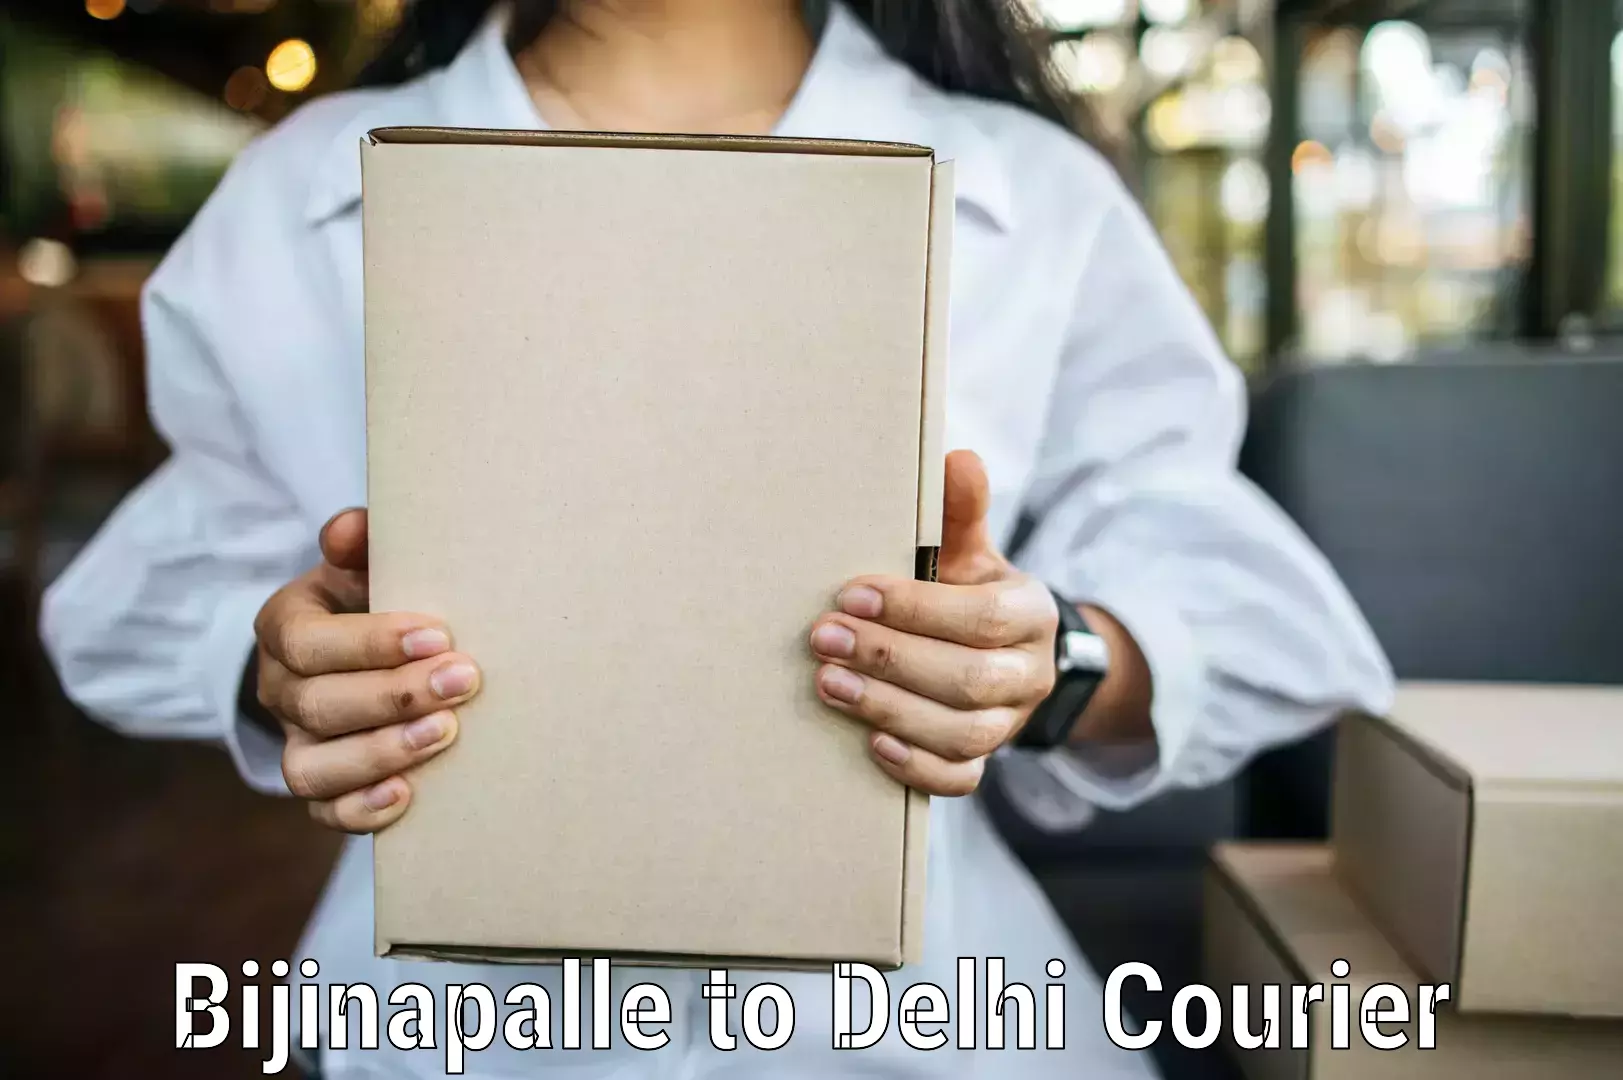 Door-to-door freight service Bijinapalle to NIT Delhi